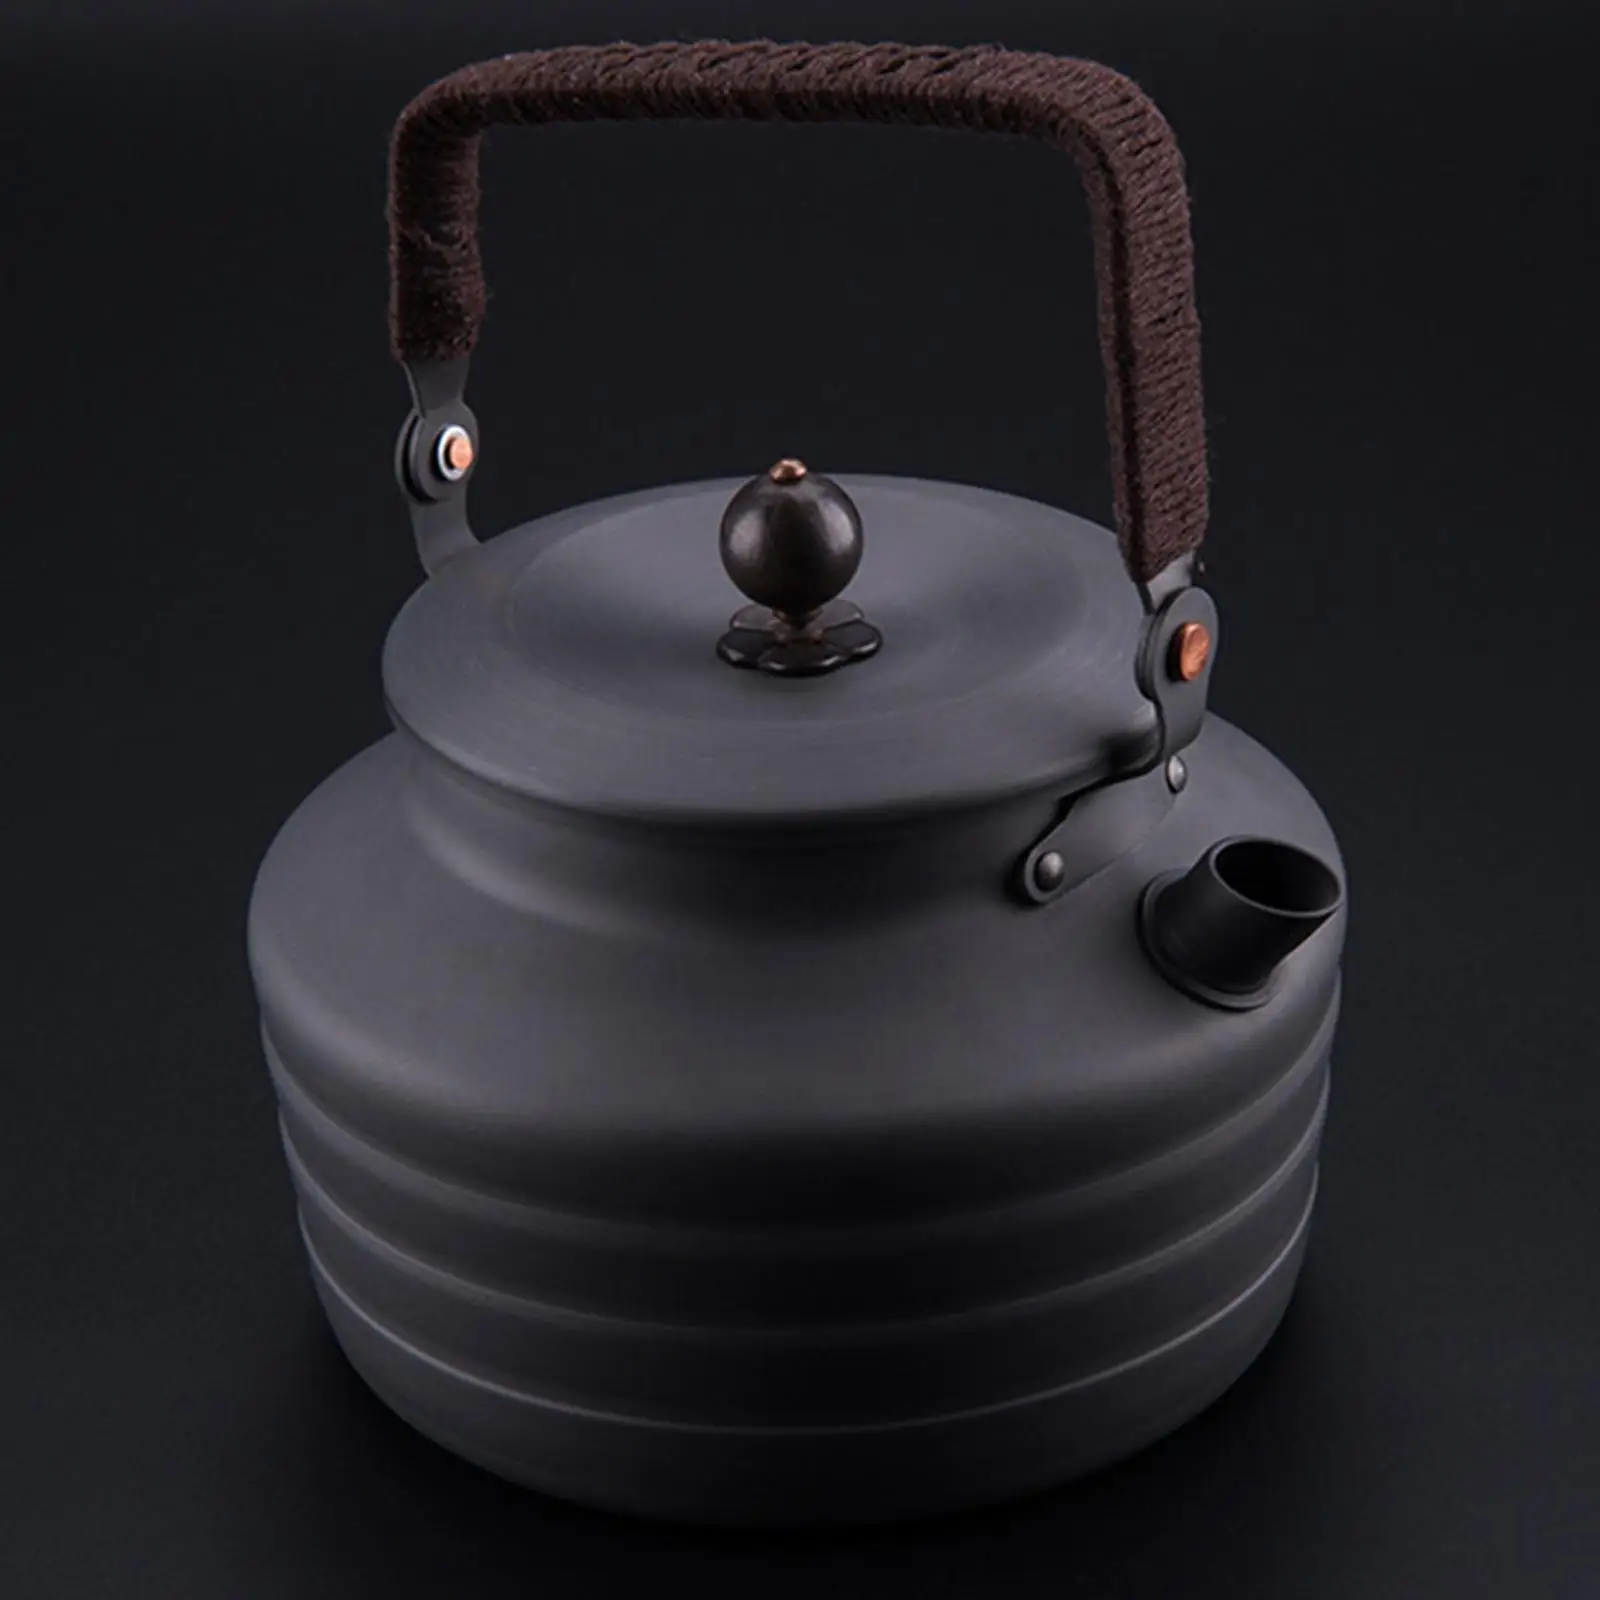 Outdoor Water Kettle Lightweight Hiking Picnic Tea Pot  Cookware